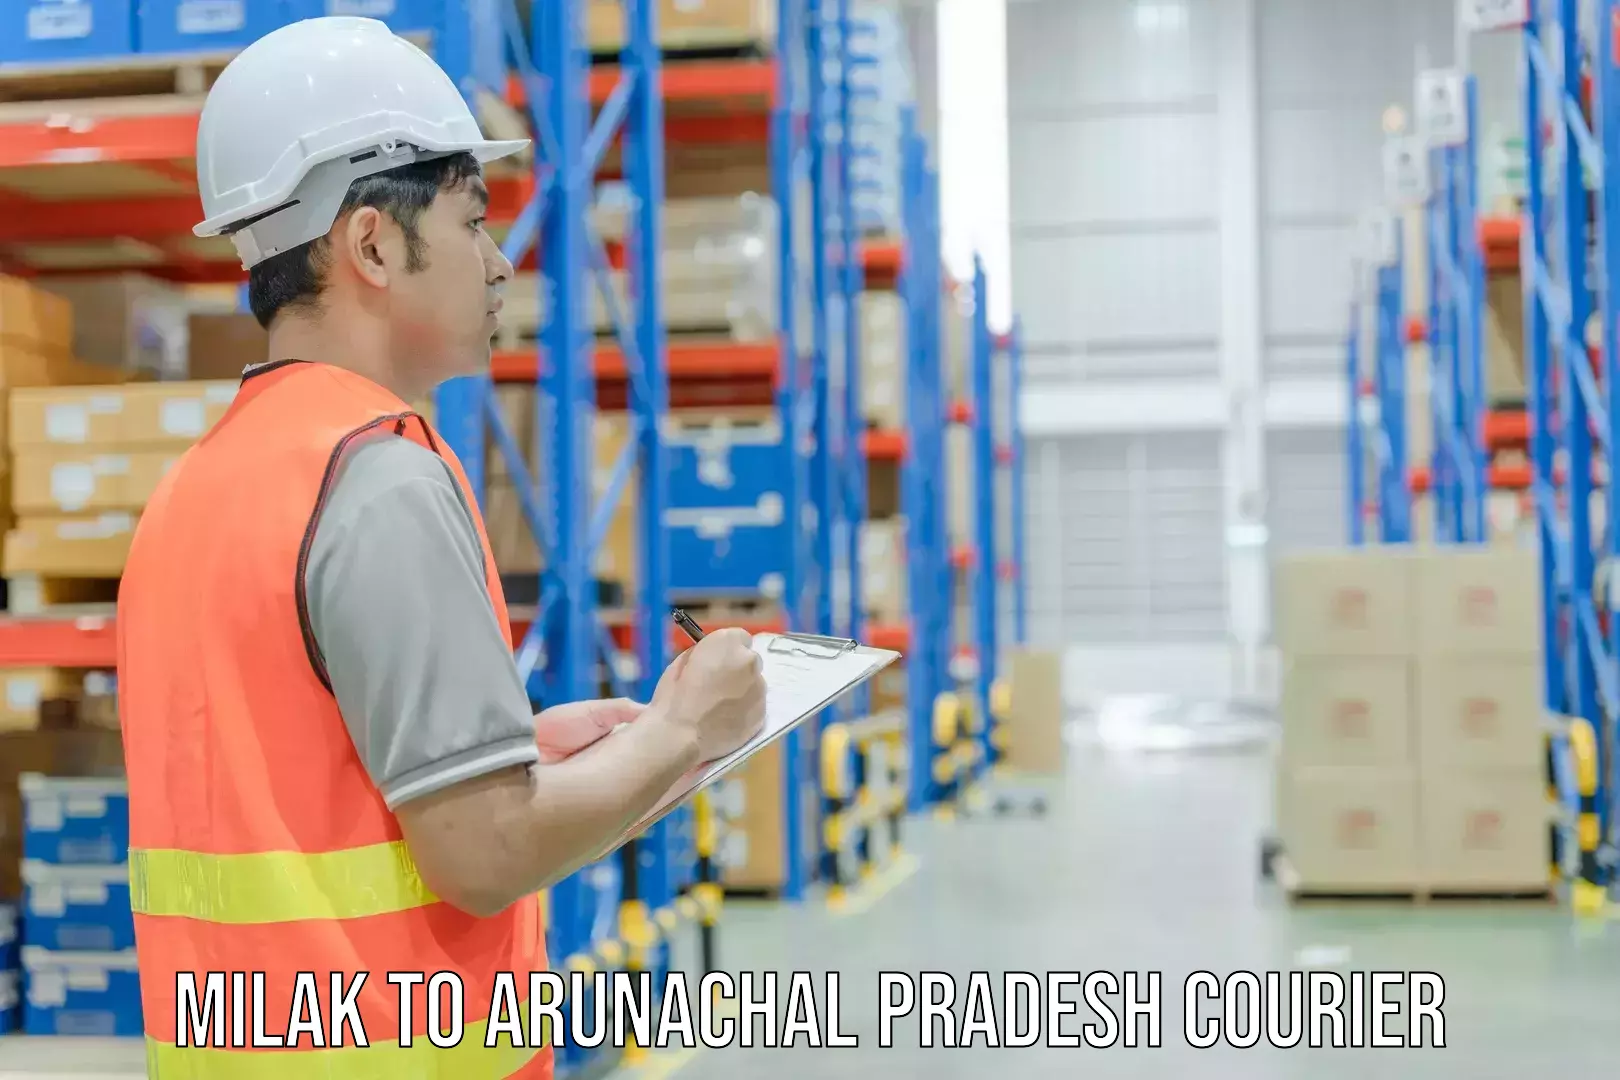 Global courier networks Milak to Arunachal Pradesh